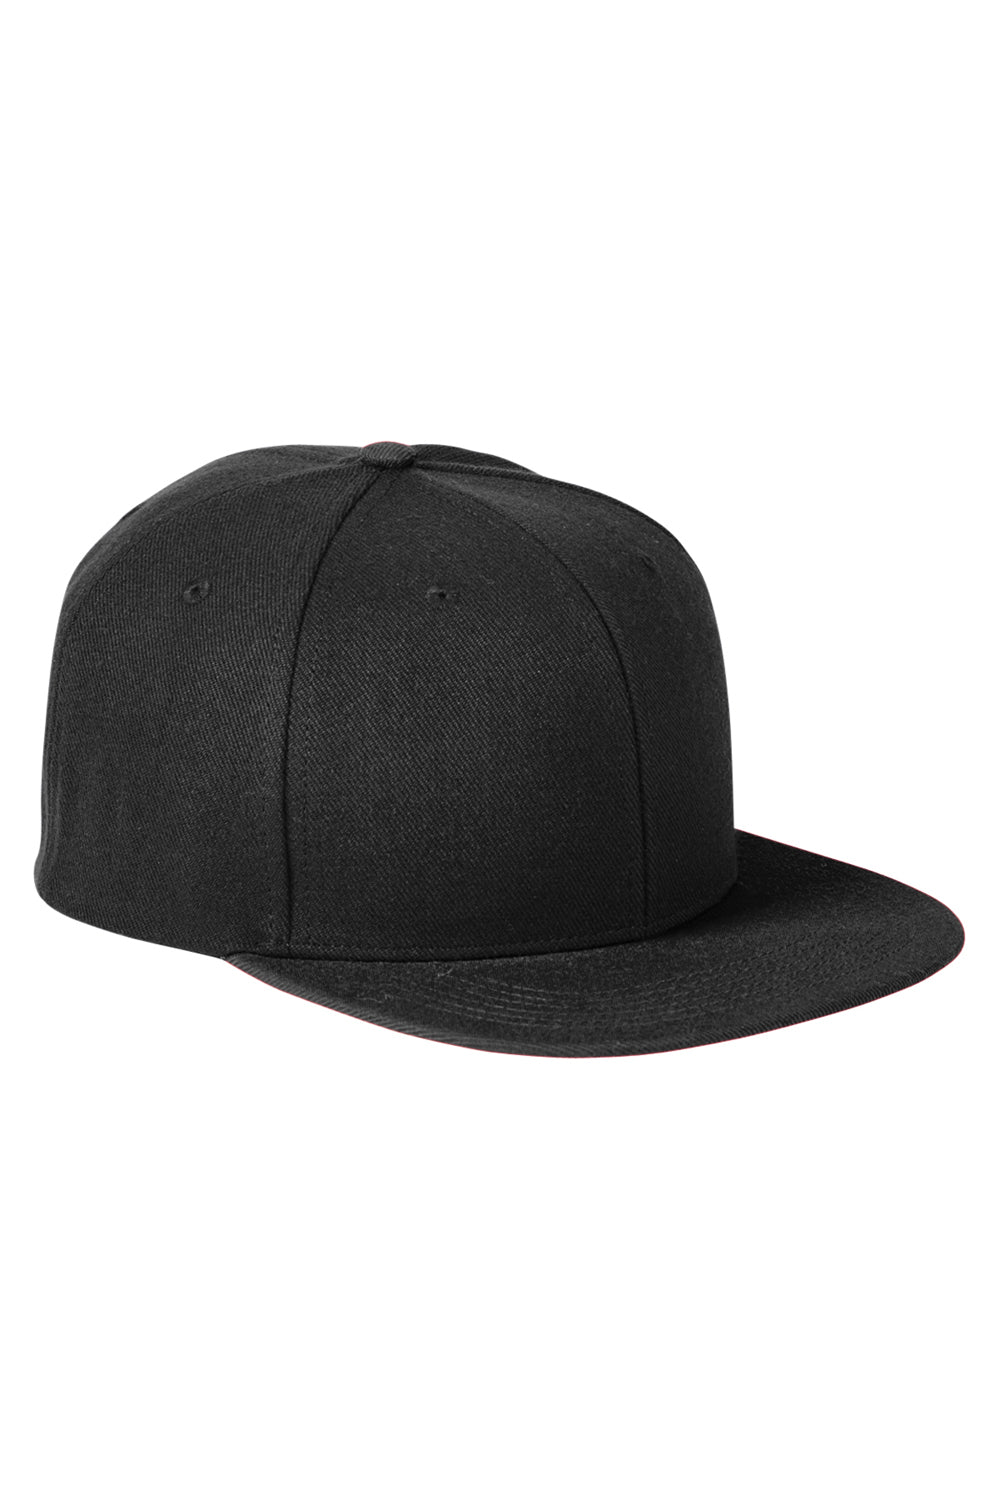 Big Accessories BA539 Mens Adjustable Hat Black Flat Front